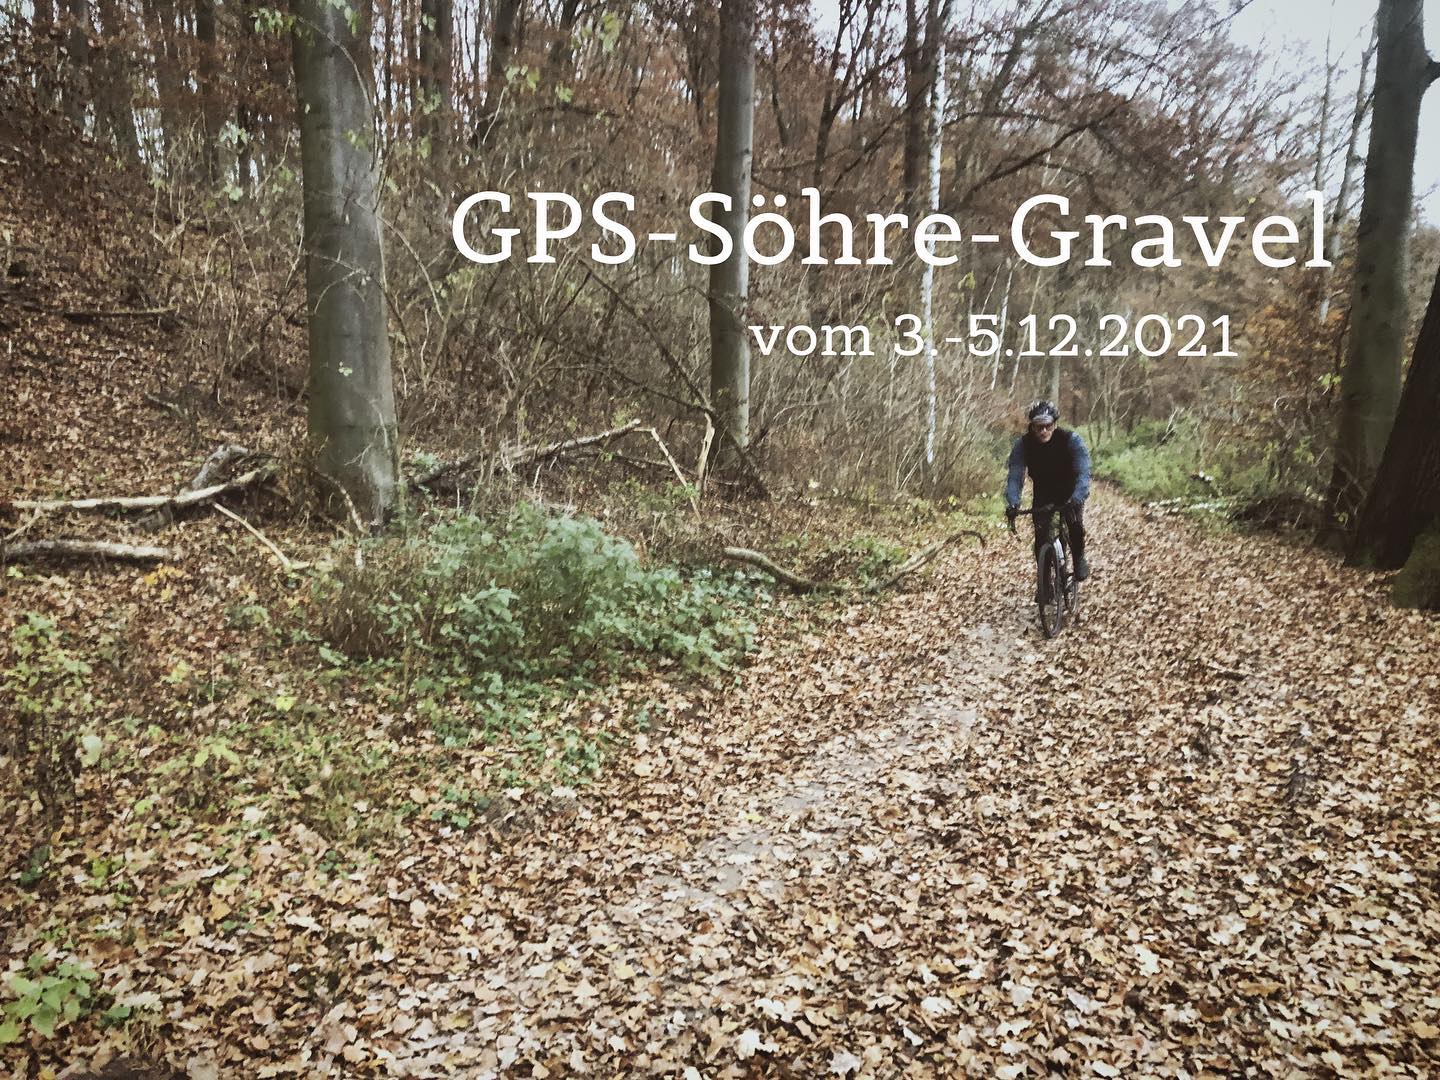 GPS-Söhre-Cross startet am Wochenende als Alternative zum Crossrennen der @zg_kassel … So können wir alle im Schlamm spielen, haben aber Abstand 🦠 Wenn ihr dabei sein wollt und nicht im Verein seid, schreibt uns eine kurze Nachricht um genaue Infos und den Link zur Route zu bekommen ❄️🌳🚲
.
.
.
#gravelbike #gravel #cycling #gravelkreisliga #kreisklasse #forrest #trail #schmugglerweg #schmugglerpfad  #bergshausen #grimmheimatnordhessen #nordhessen #vollgas #gravelautobahn #ballern #ballernballern #fullforce #laforet #gravelclub #zgkassel #habichtswald #kassel #herkules #hessenradsport #hessengravel